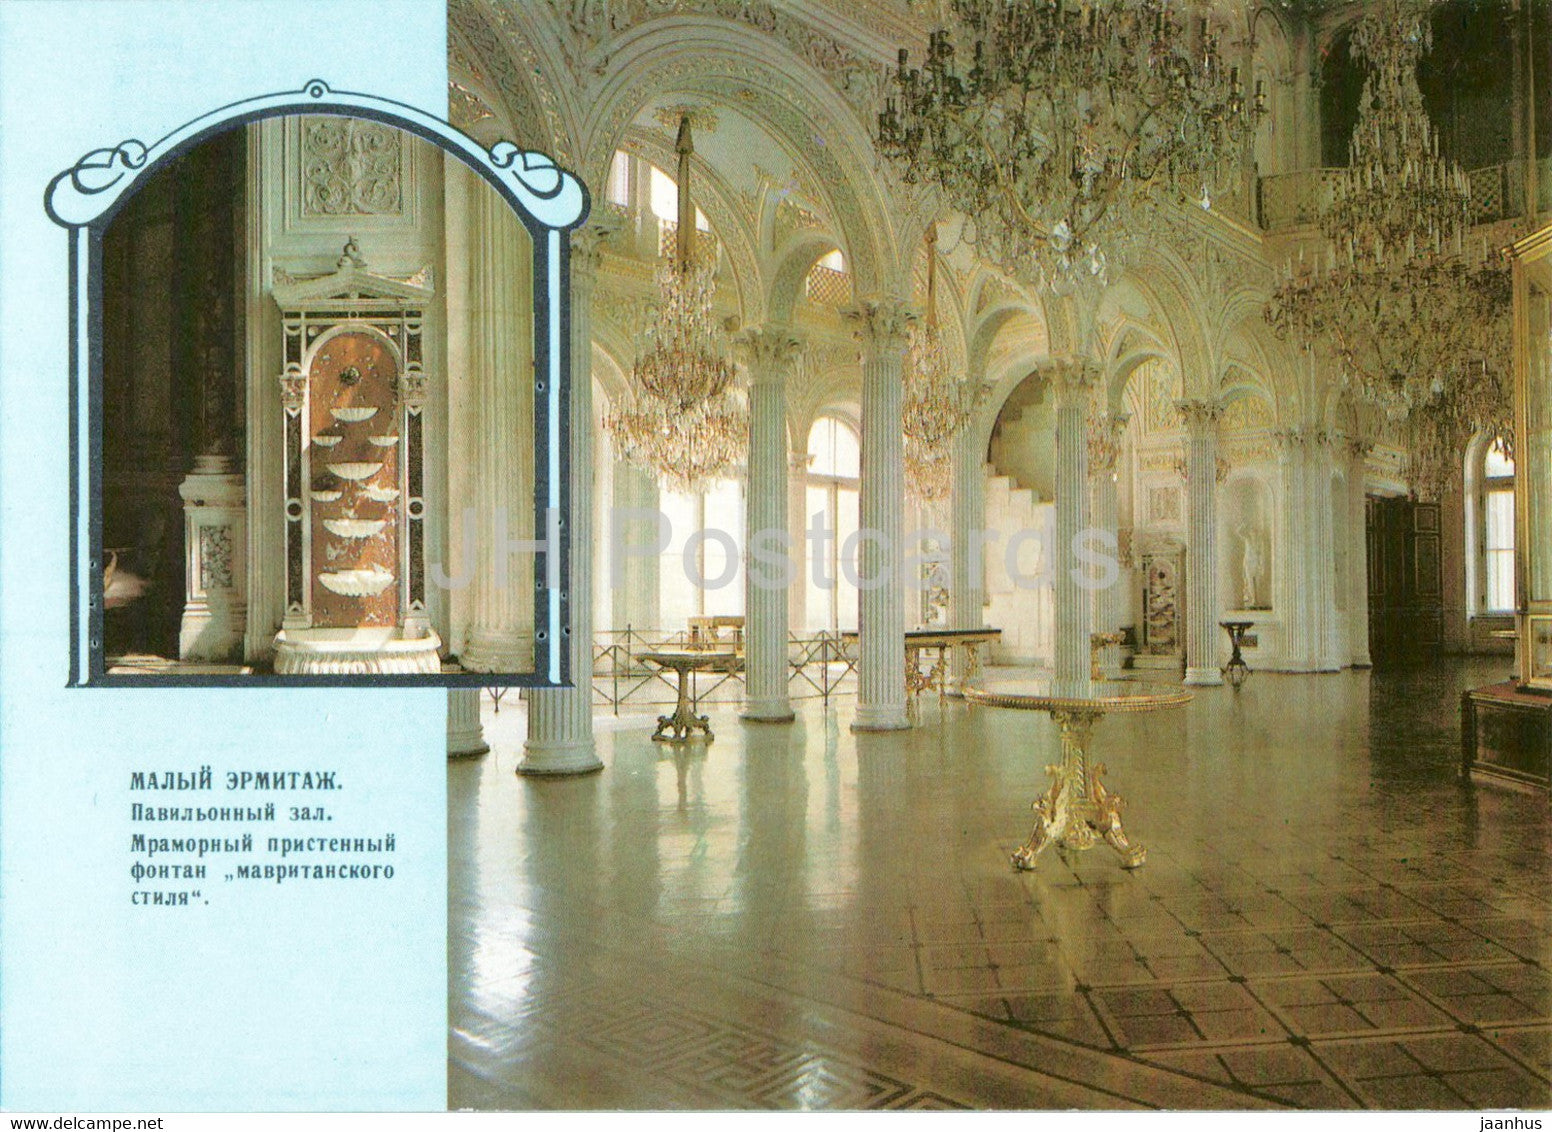 Leningrad - St Petersburg - State Hermitage - Pavilion hall - postal stationery - 1989 - Russia USSR - unused - JH Postcards